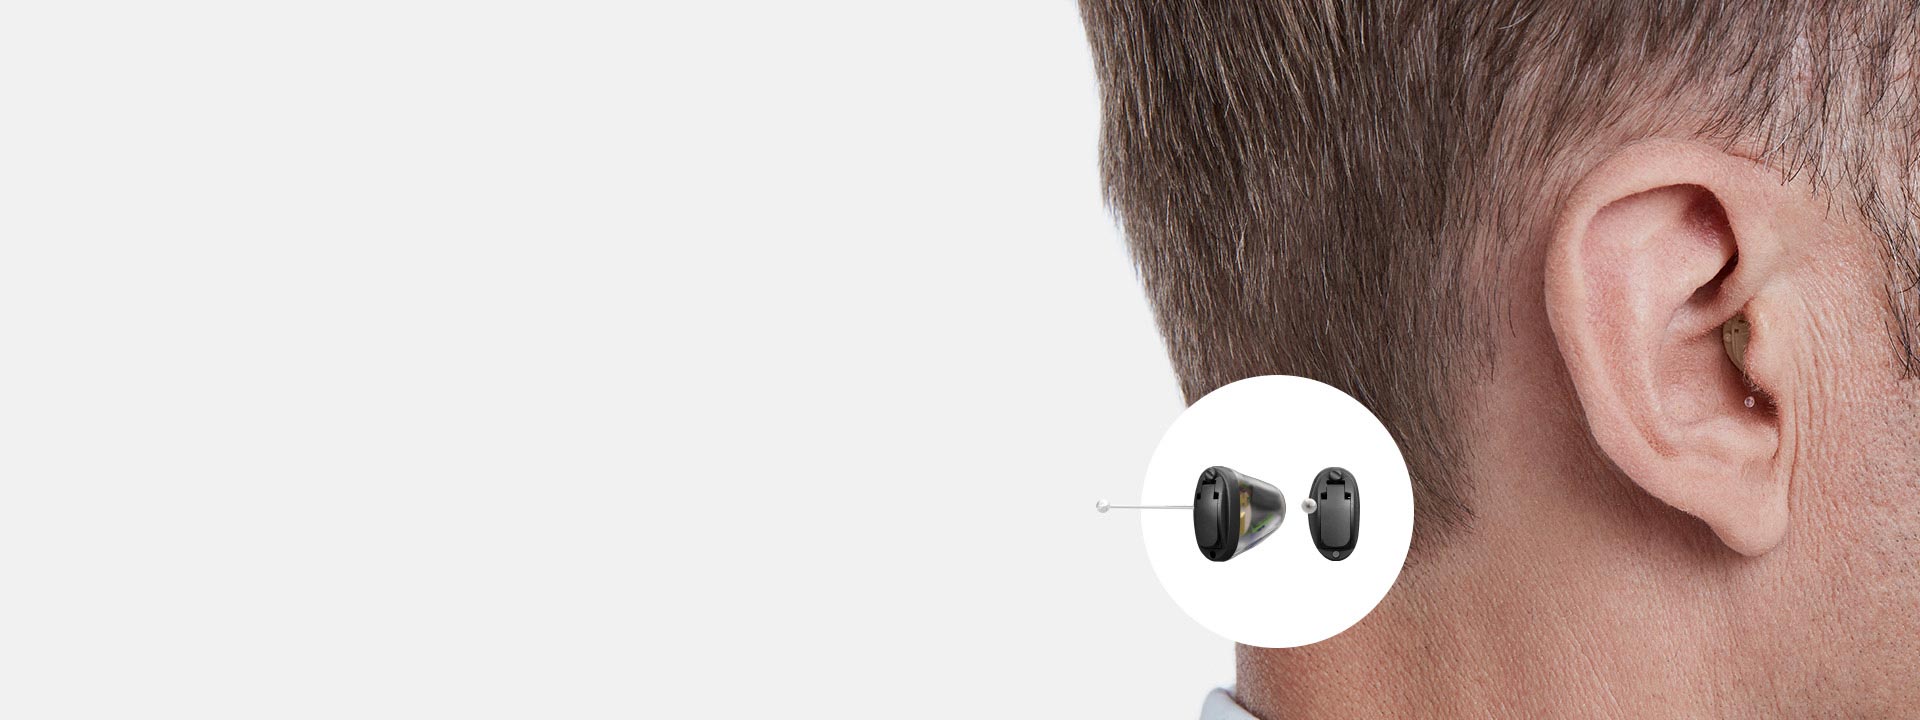 La imagen muestra un audífono intrauricular en el oído de un hombre